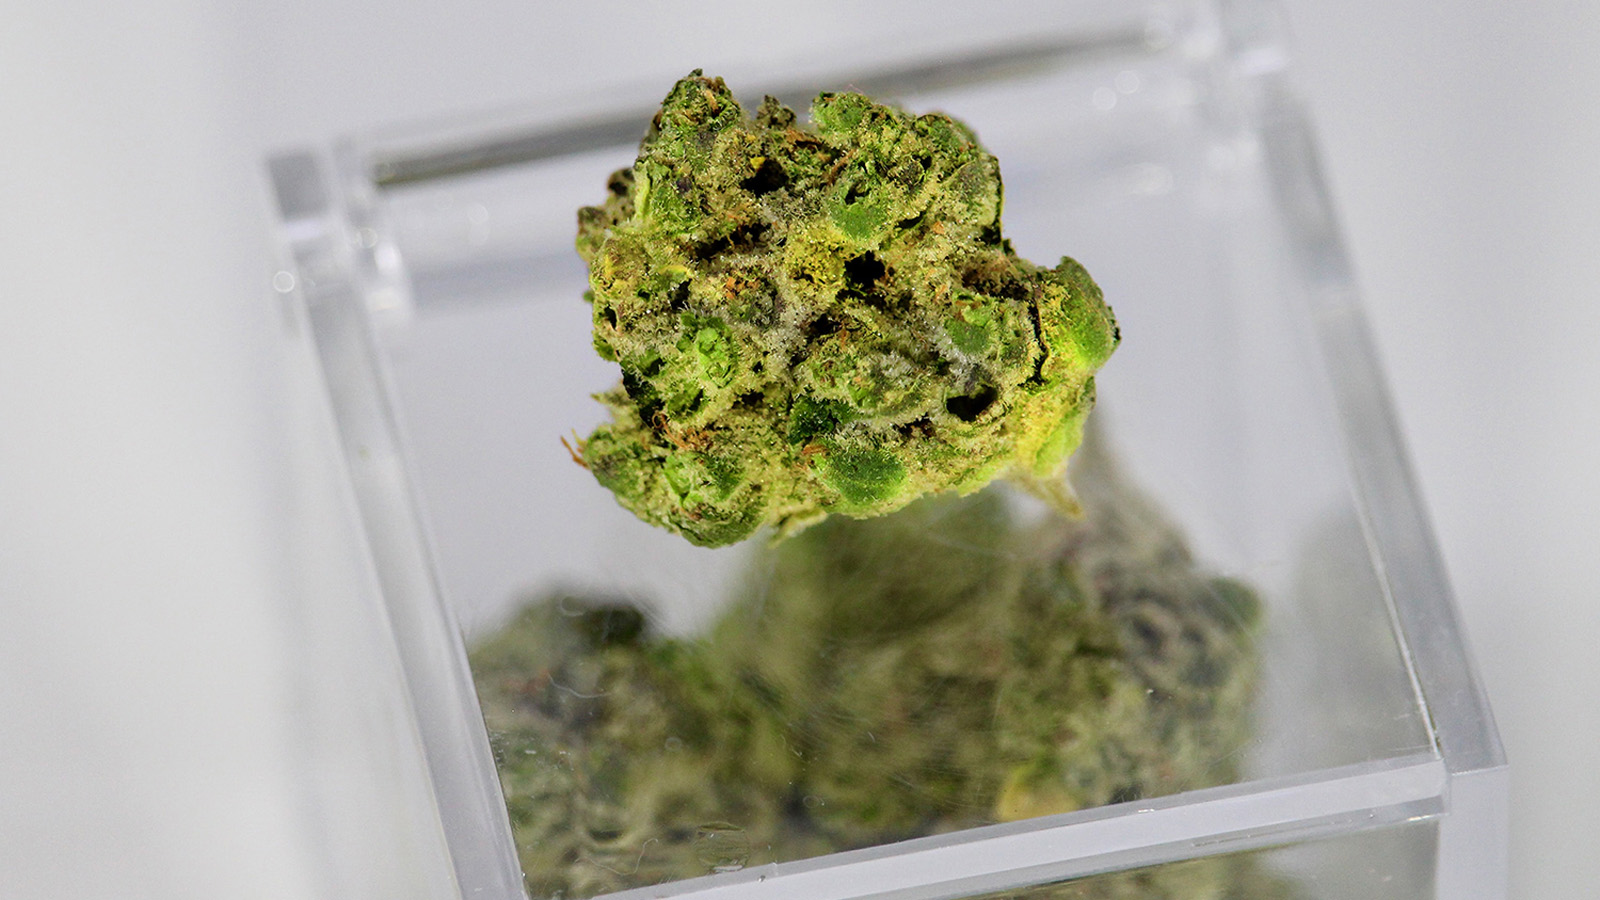 Einzelne Cannabisblüte auf Kunststoffbox